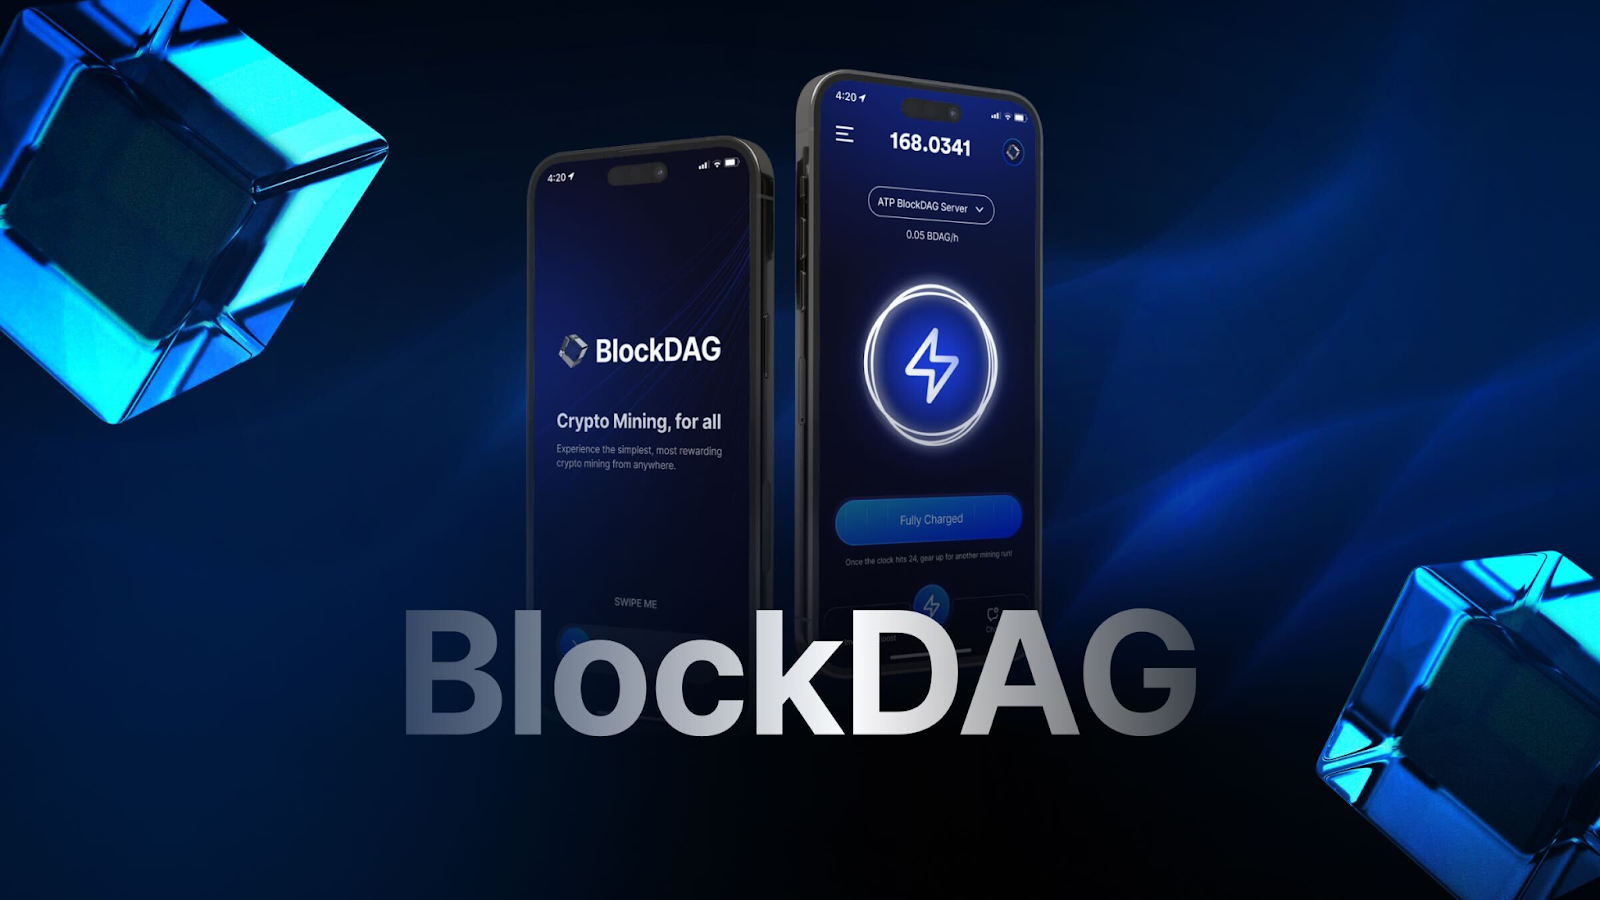 BlockDAG は、比類のないスケーラビリティと潜在的な 30,000 倍の ROI を備えたトップのアルトコインとして浮上